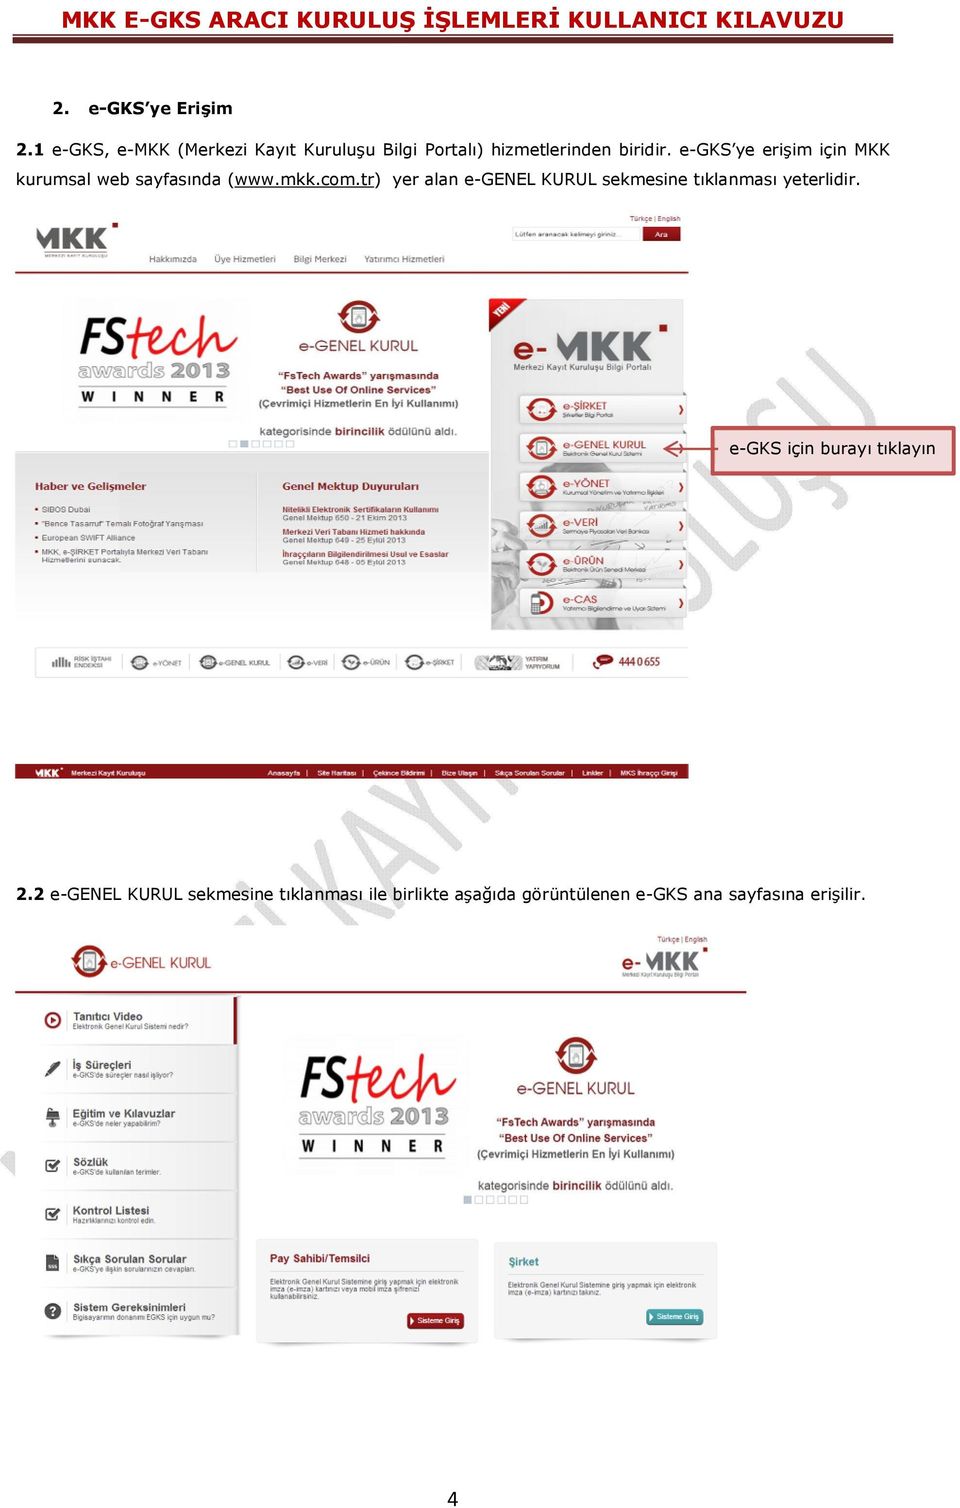 e-gks ye erişim için MKK kurumsal web sayfasında (www.mkk.com.